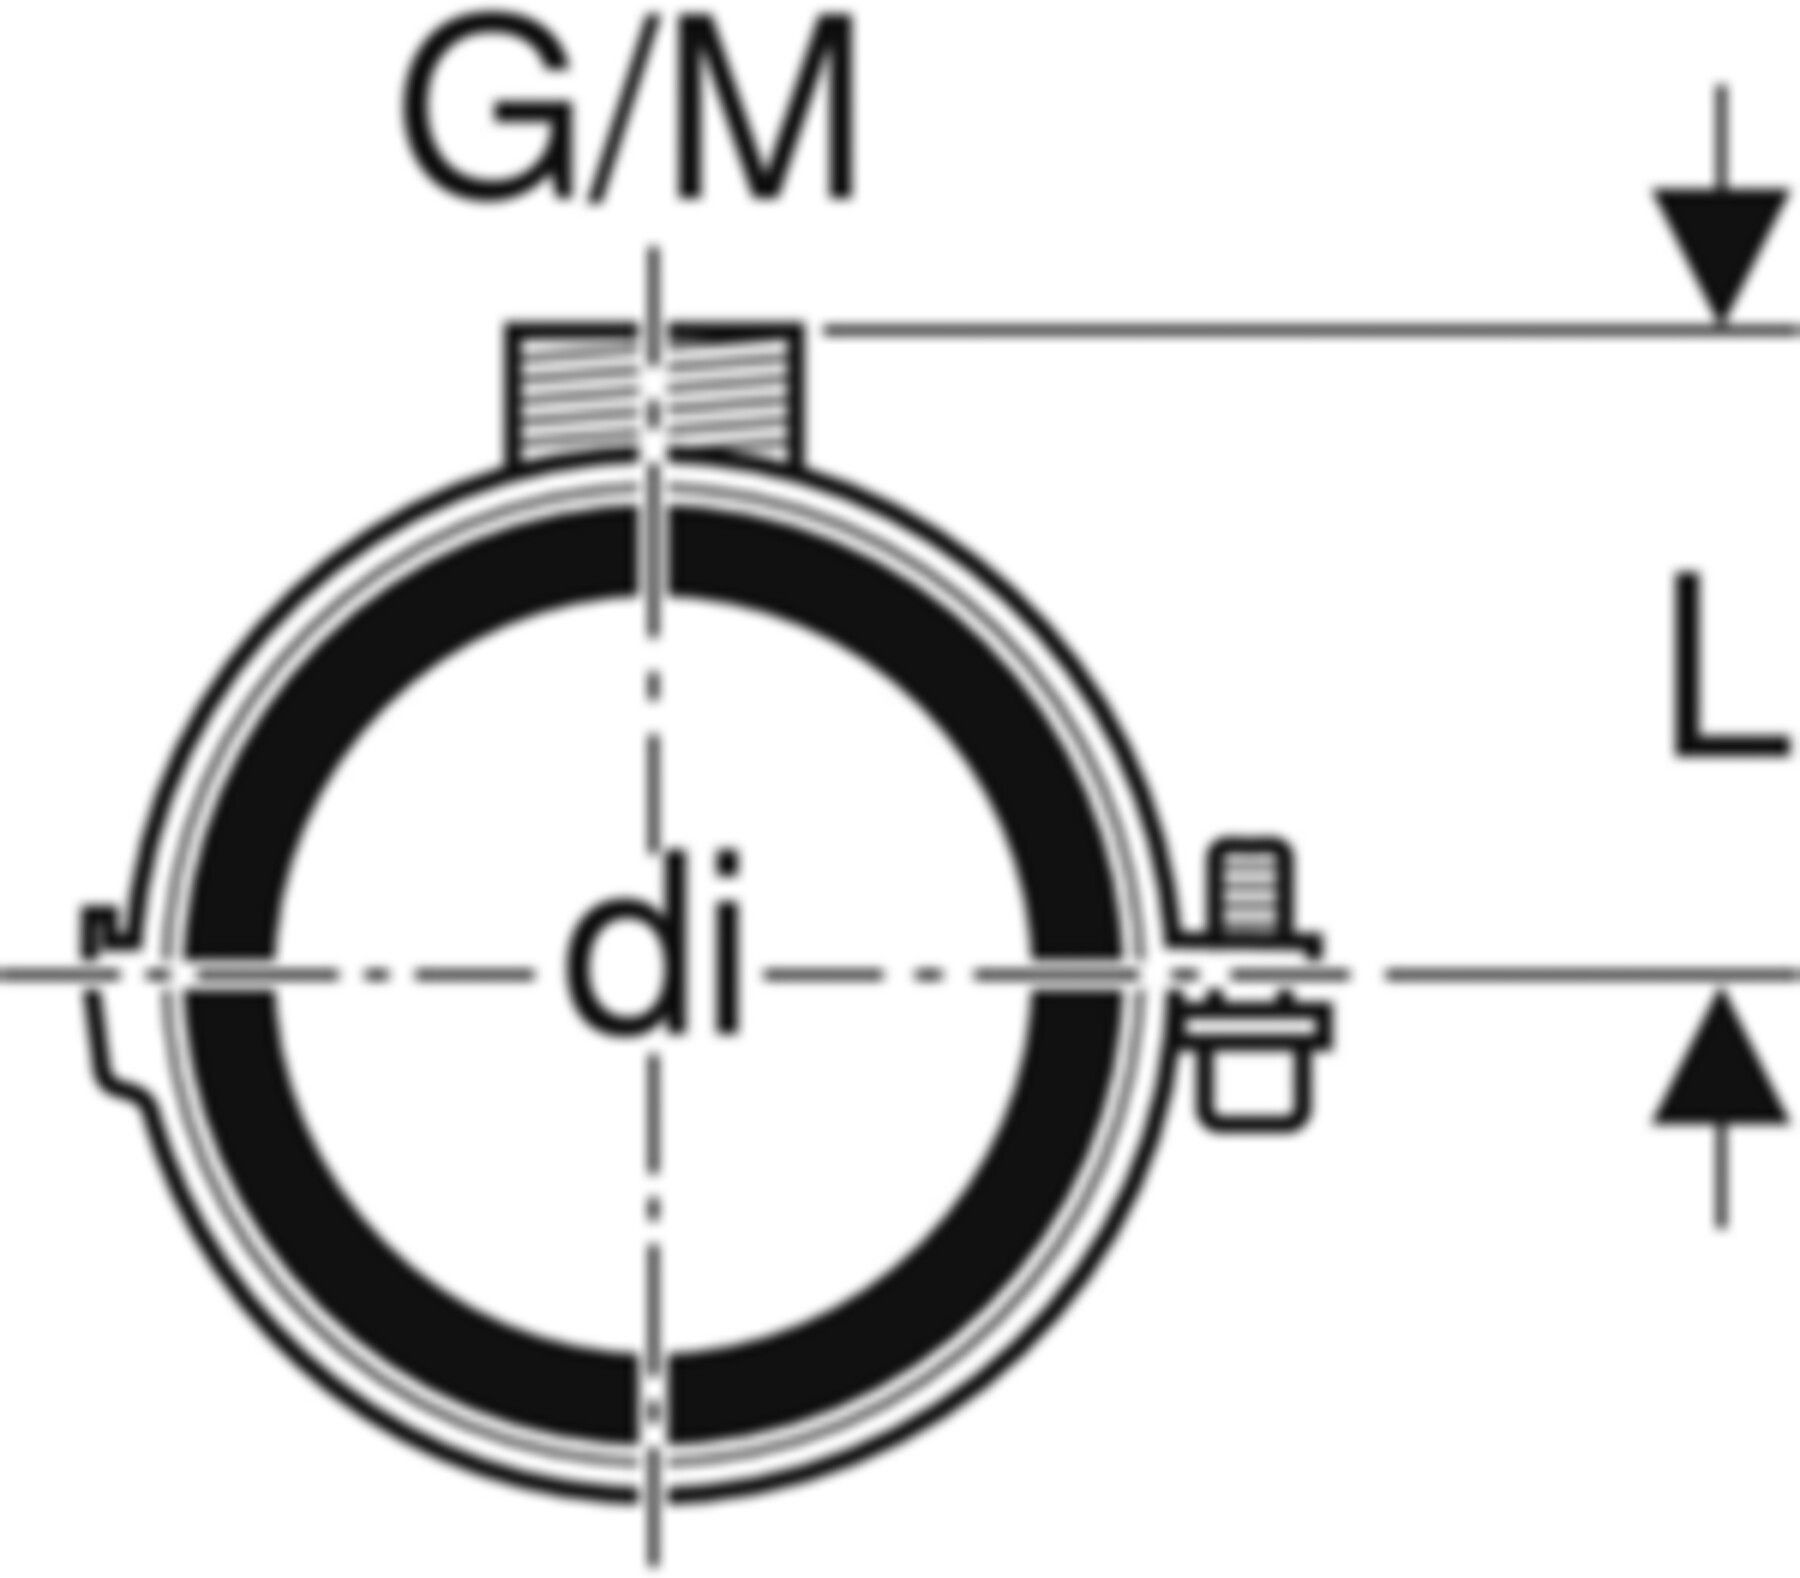 Rohrschelle mit Dämmeinlage d 160 mm G/M 1/2"/M10 315.812.26.1 - Geberit-PE-Formstücke